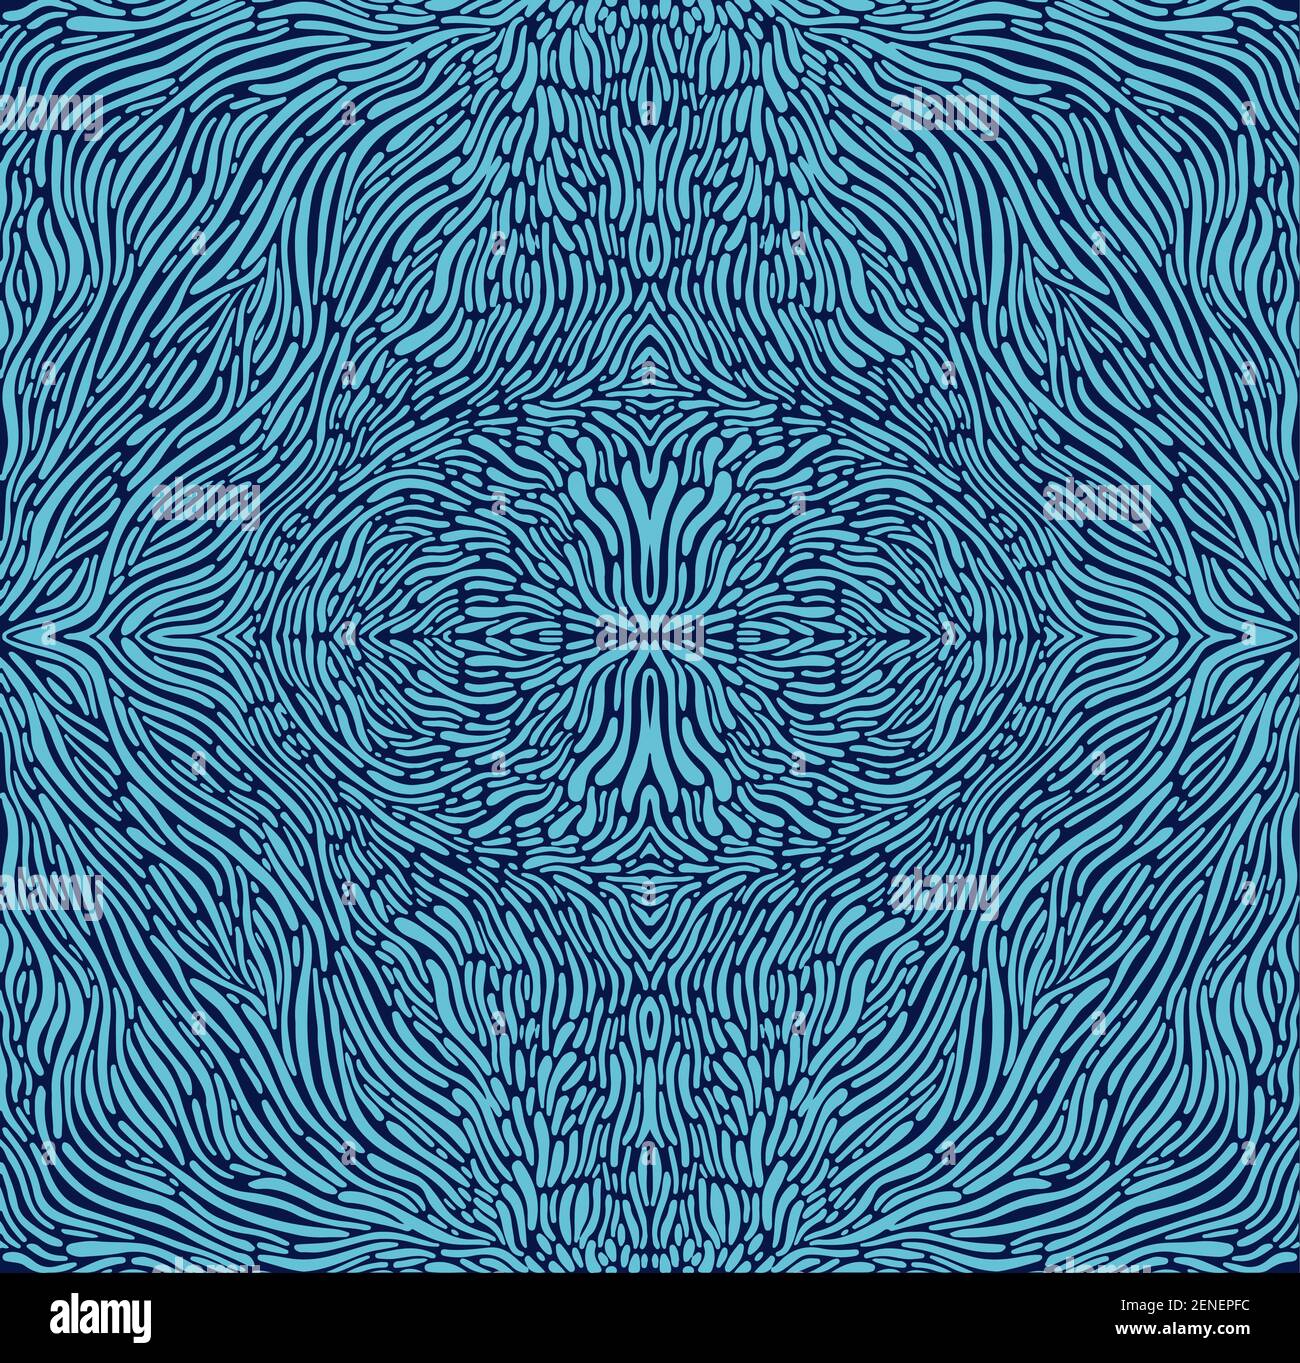 Tryppi psychédélique motif fractal coloré, contour bleu, fond bleu foncé. Mandala abstrait surréaliste avec labyrinthe d'ornement de fantaisie chamanique Illustration de Vecteur